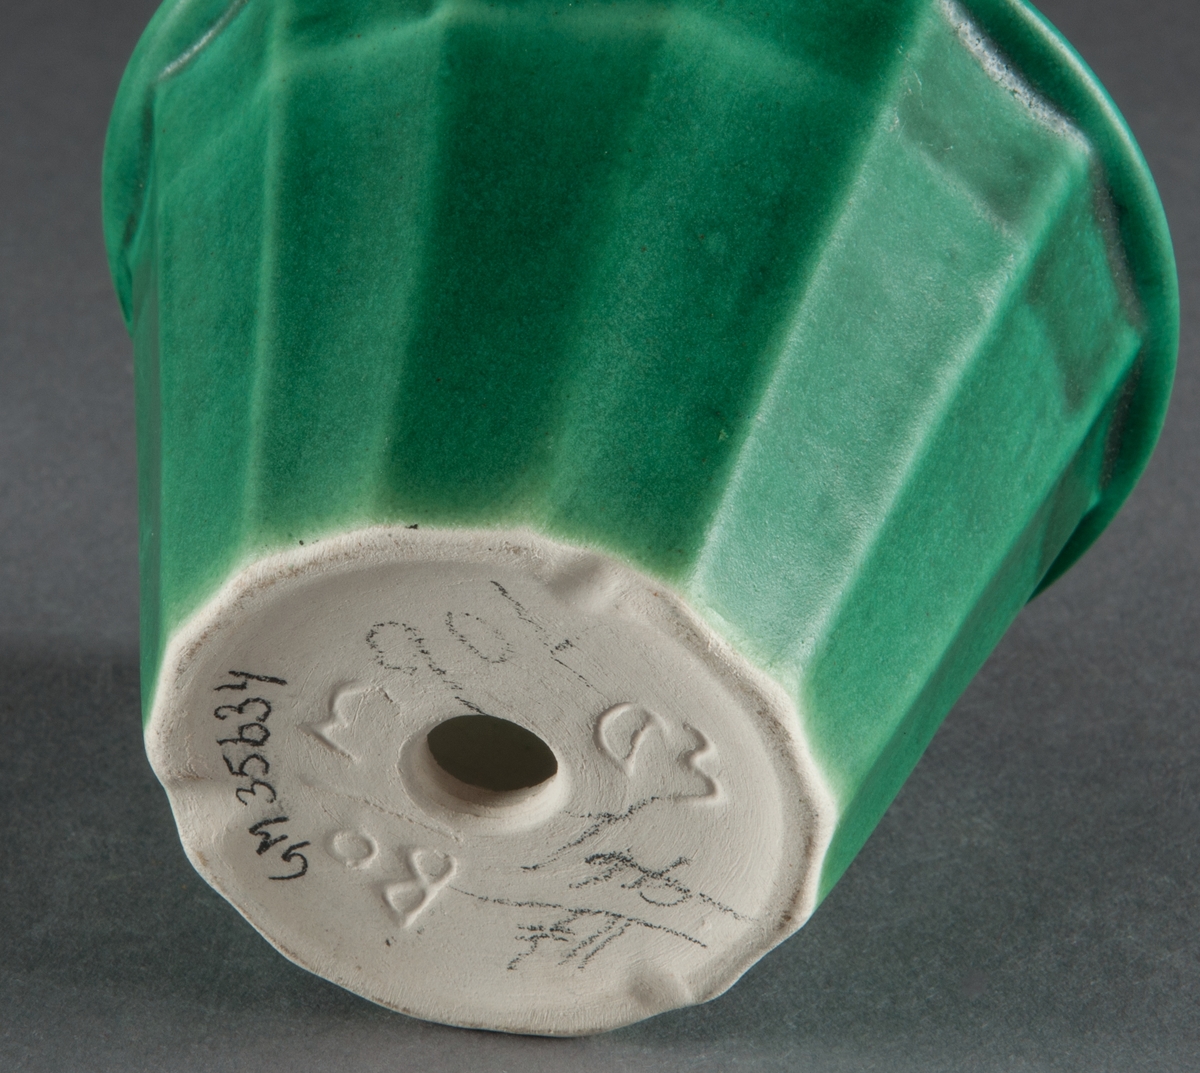 Blomkruka tillverkad vid Bo Fajans i Gävle. Formgiven av Ewald Dahlskog. Modell Artis, storlek 3, grön glasyr.